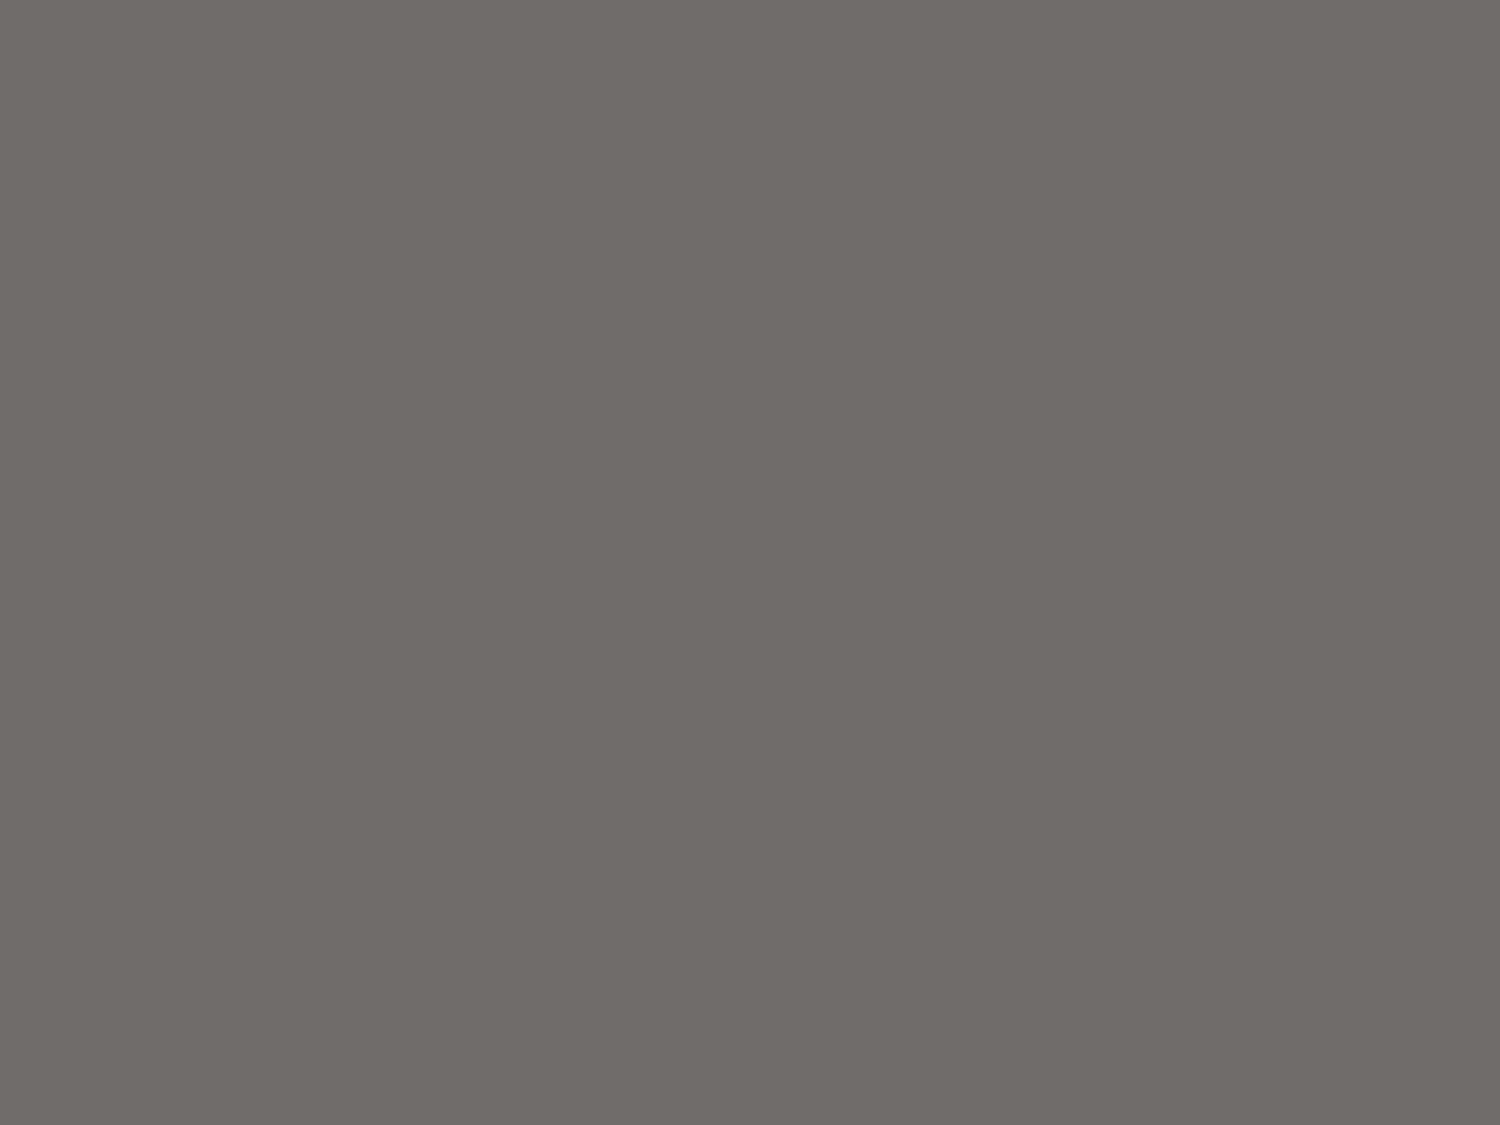 Борис Кустодиев. Купчиха за чаем. 1918. Государственный Русский музей, Санкт-Петербург, Россия